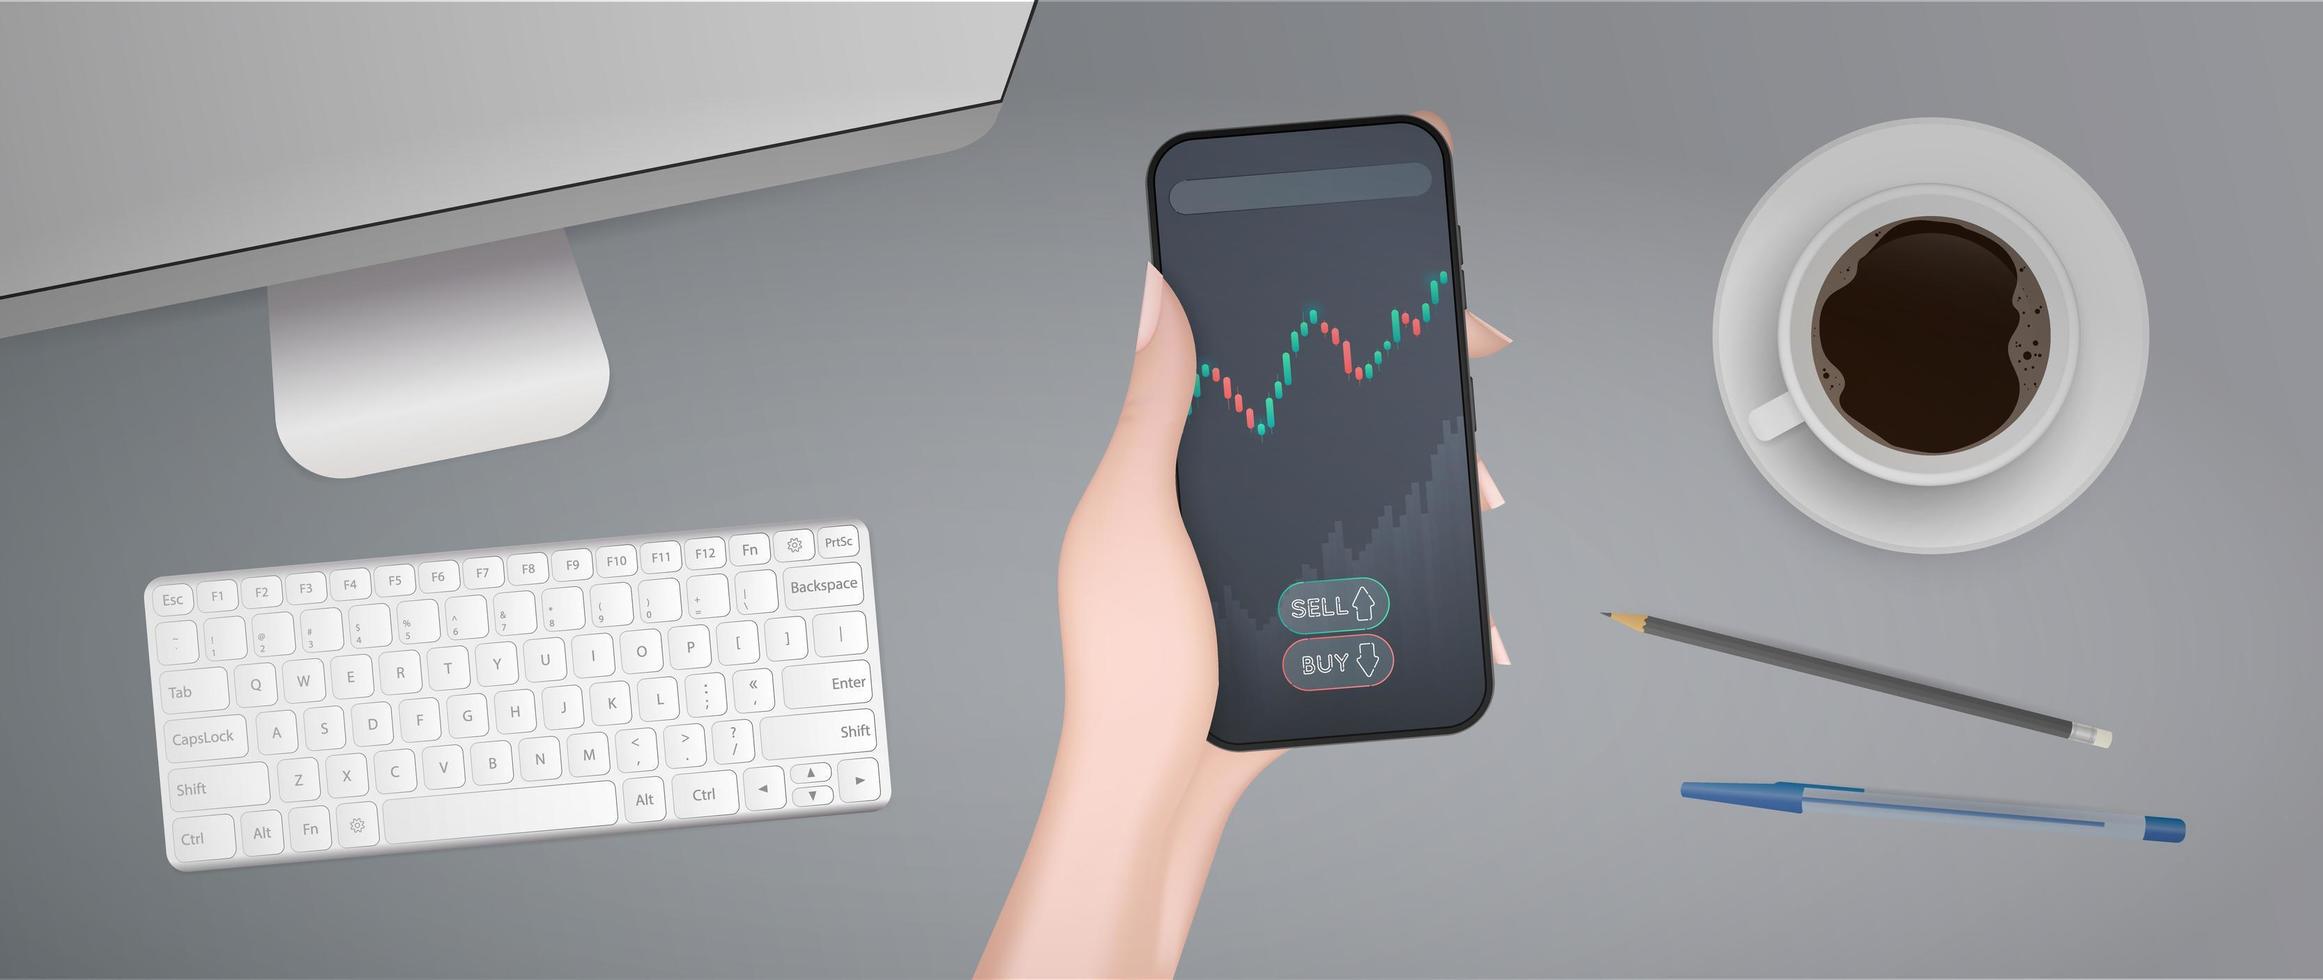 le concept de négociation sur la bourse financière. une main tient un téléphone avec un graphique de croissance. lieu de travail d'un analyste ou d'un trader. illustration vectorielle. vecteur